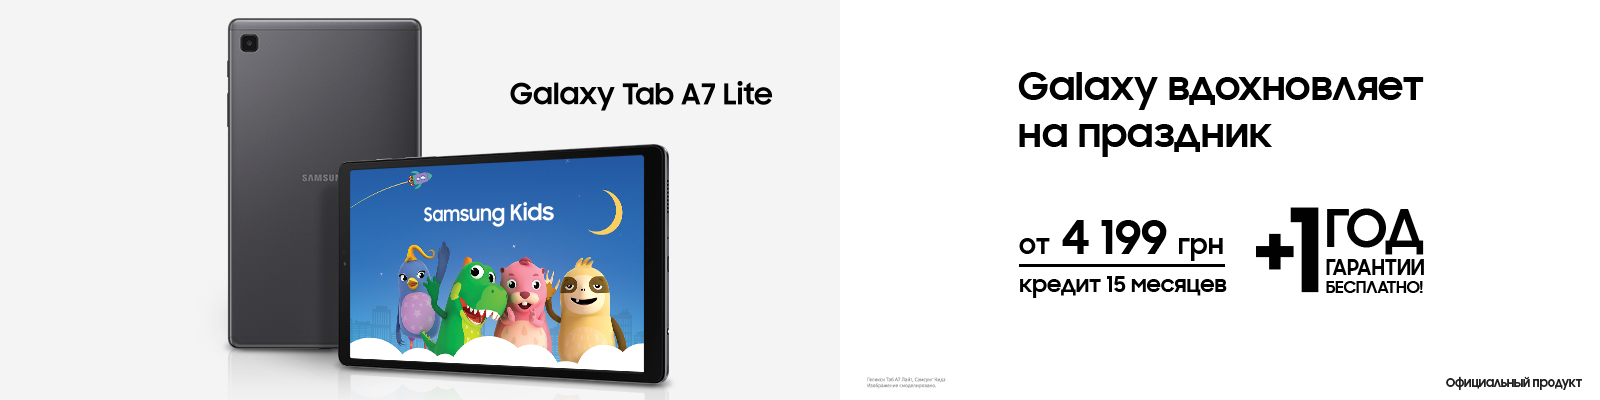 Galaxy TAB A7 Lite вдохновляет на праздник